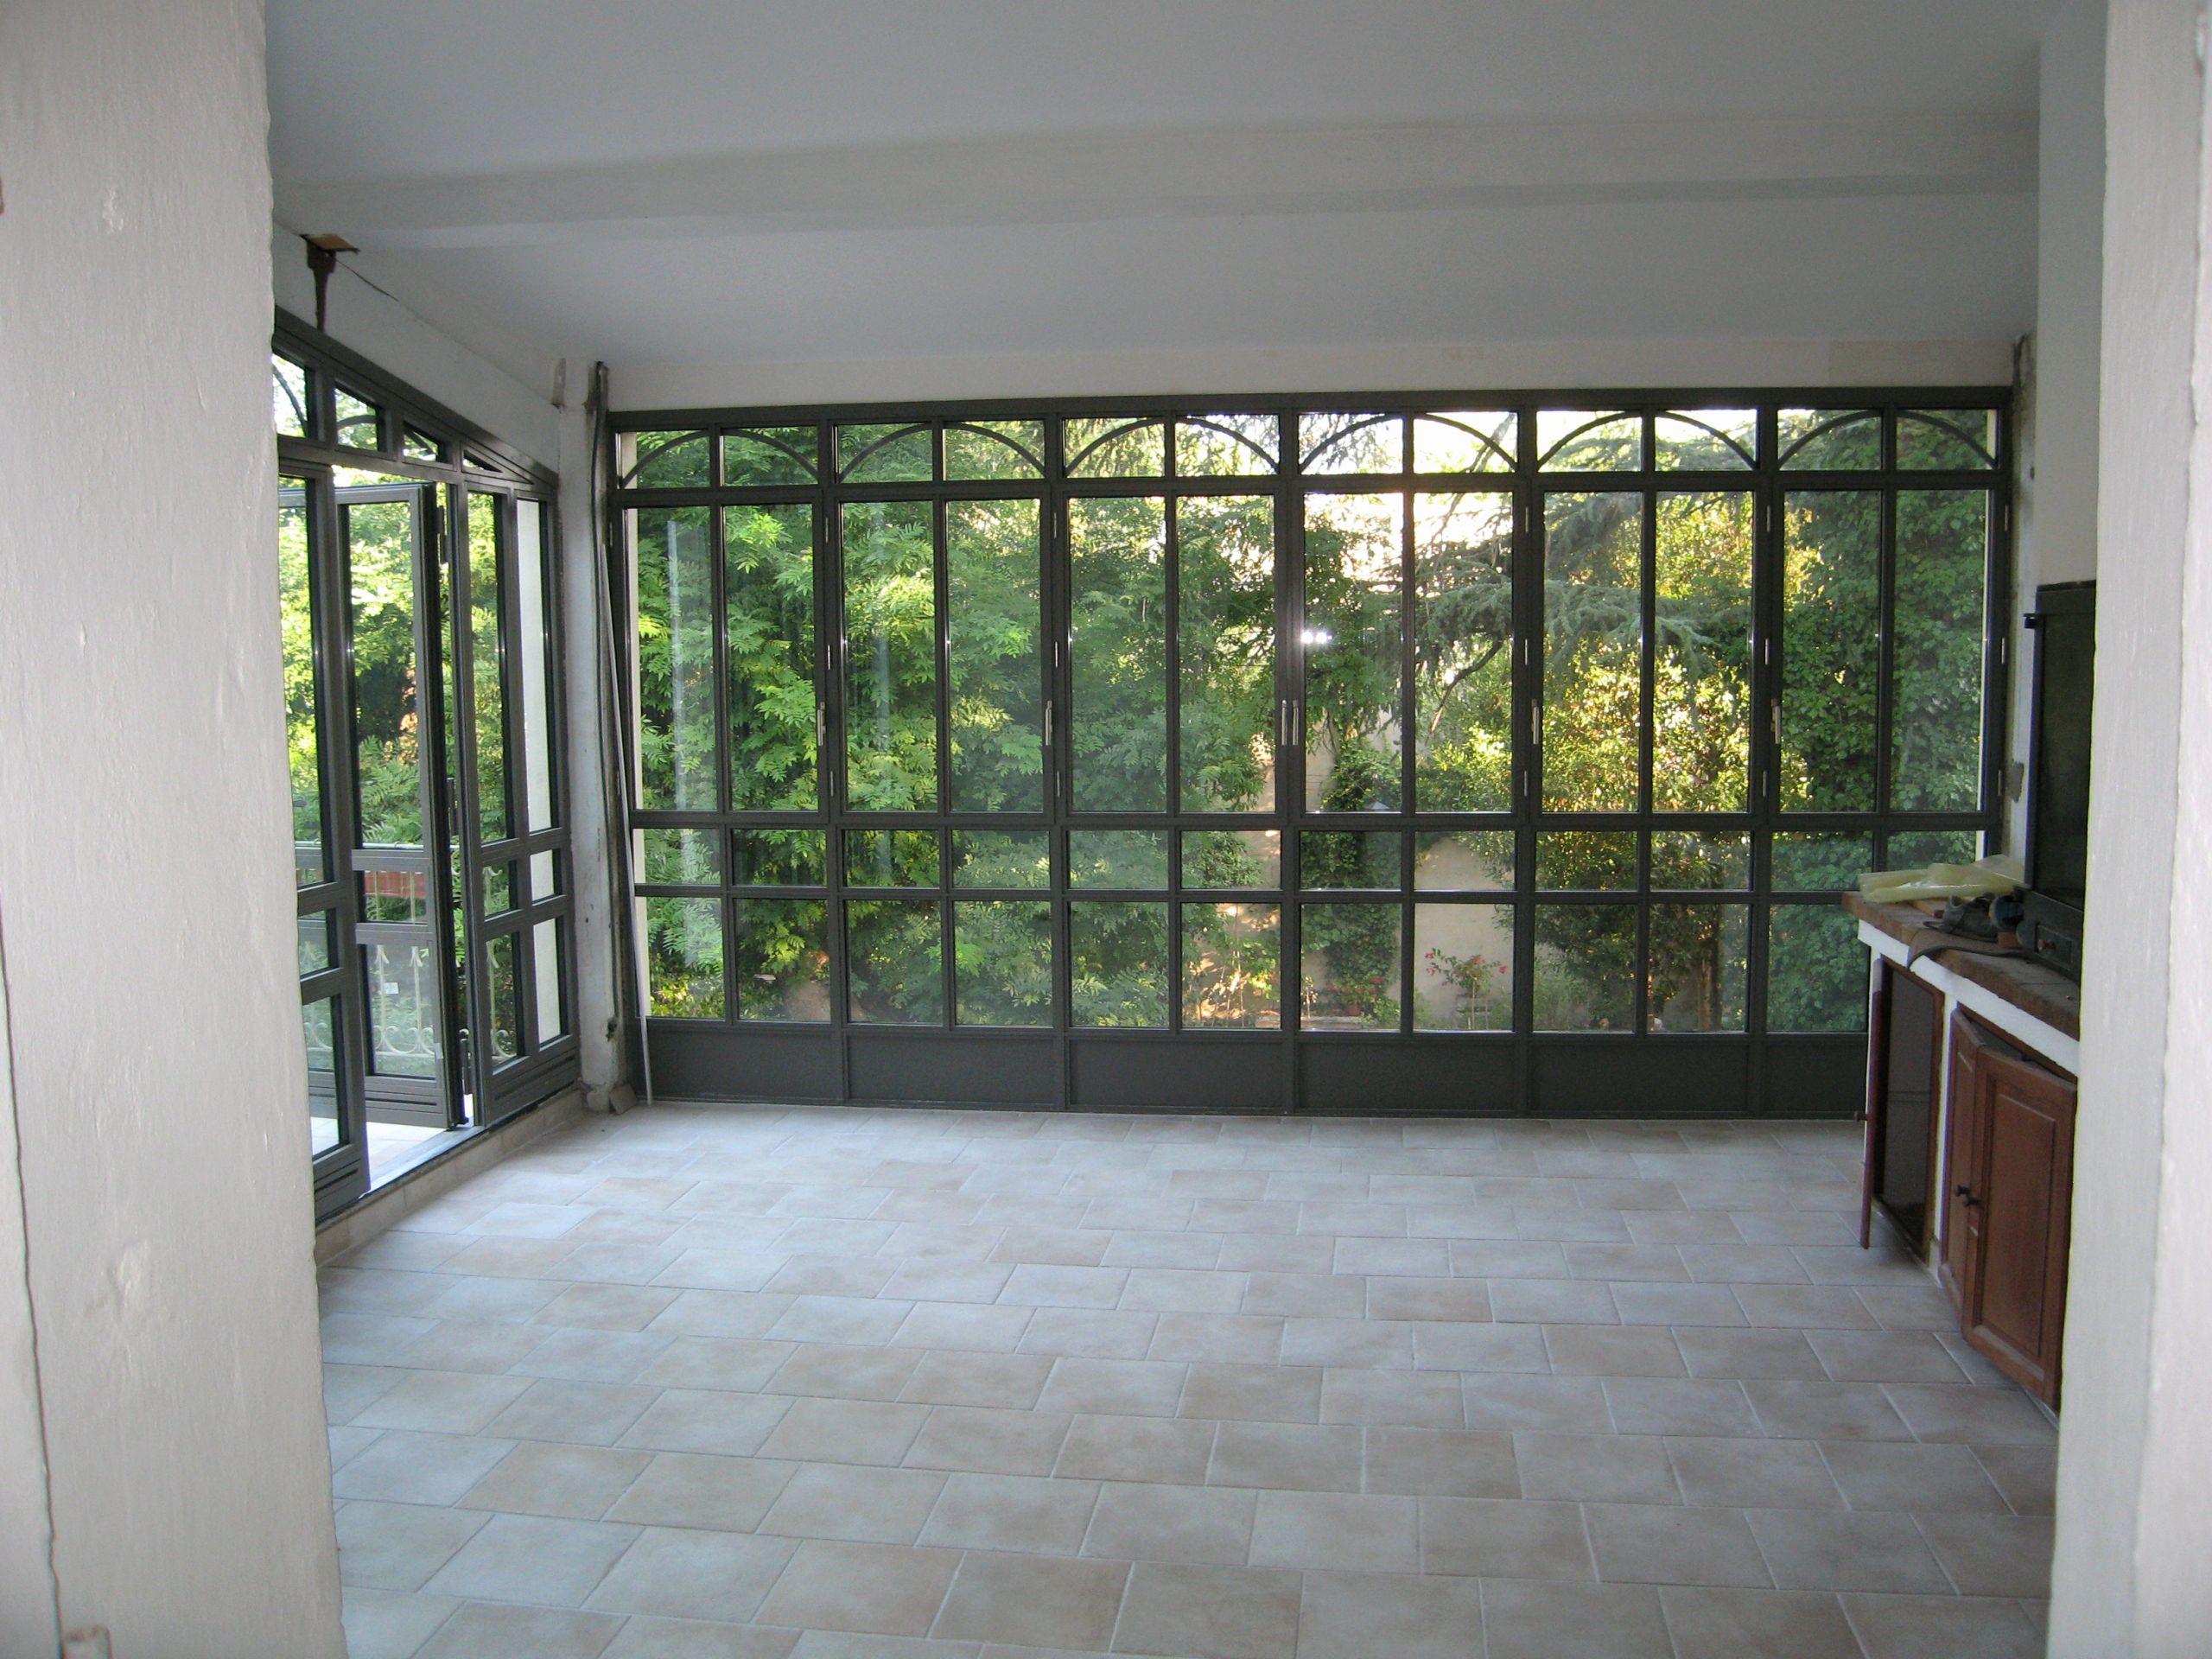 fermer une terrasse couverte nouveau salon de jardin bambou inspirant magnifique de salon de jardin en of fermer une terrasse couverte